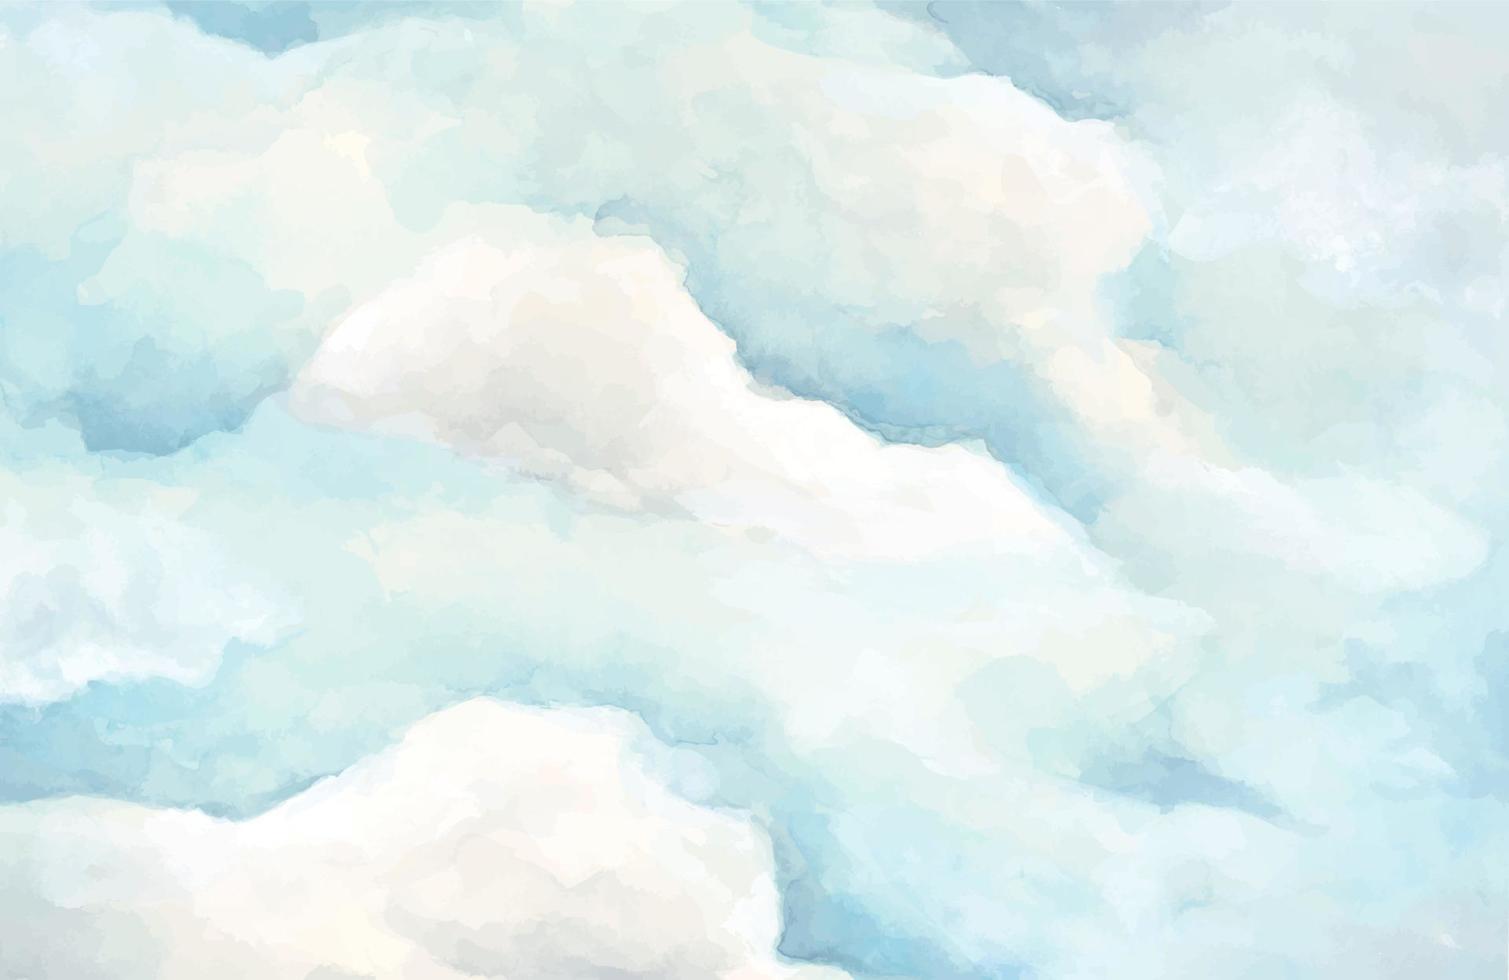 céu azul com nuvens, ilustração em aquarela. vetor